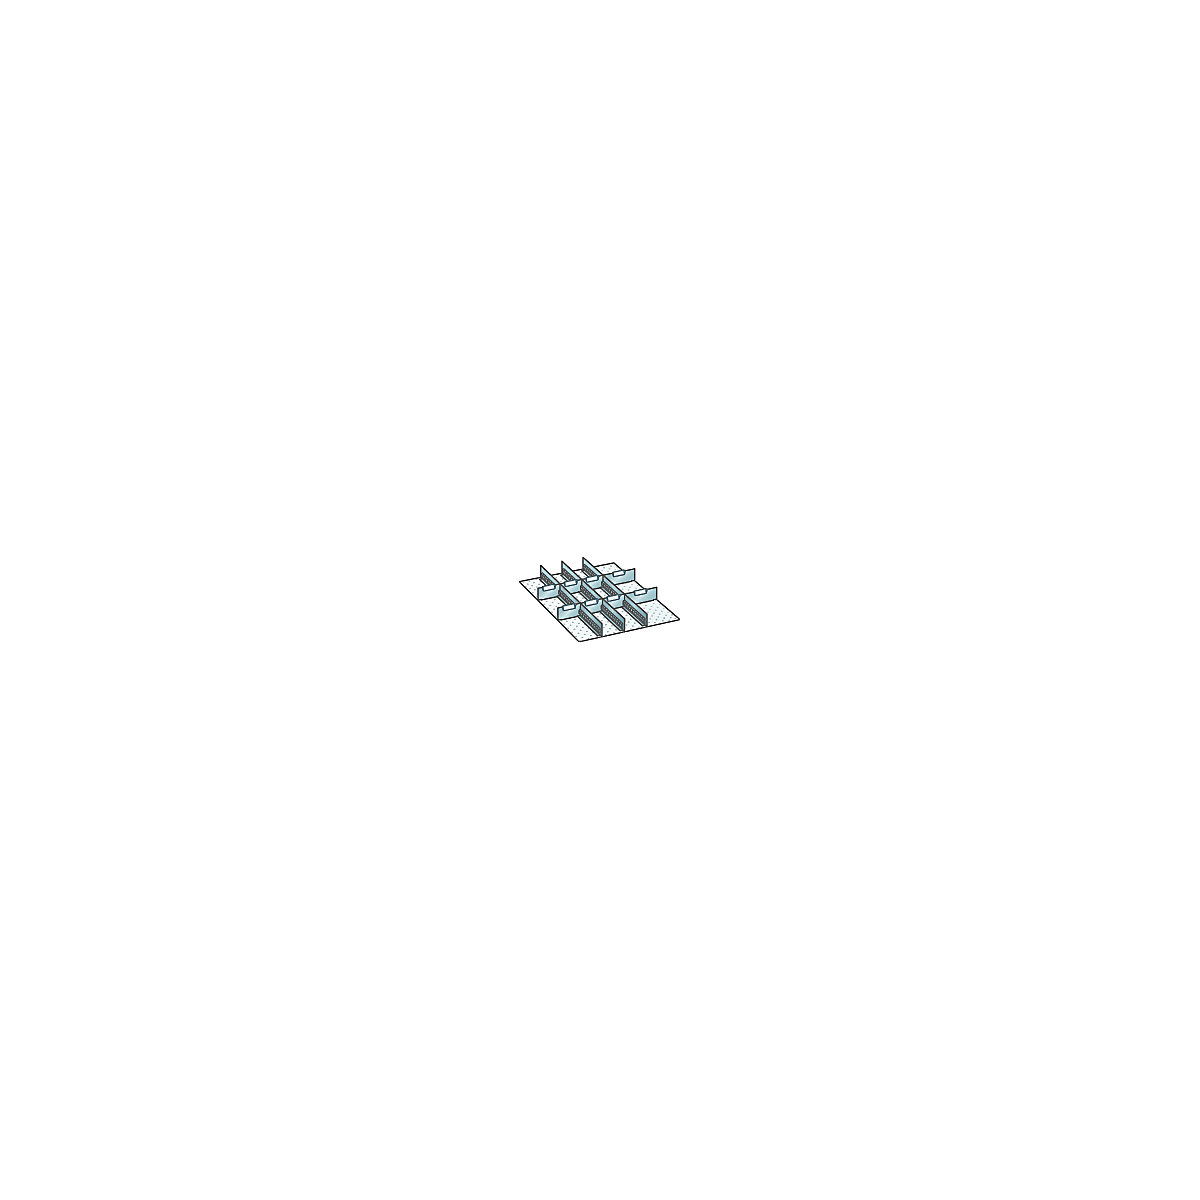 LISTA – Conjunto de divisórias para gavetas com dimensões de 459 x 612 mm, paredes ranhuradas e chapas separadoras para dividir de forma flexível, 3 paredes ranhuradas, 6 + 2 chapas separadoras, altura frontal 50 mm